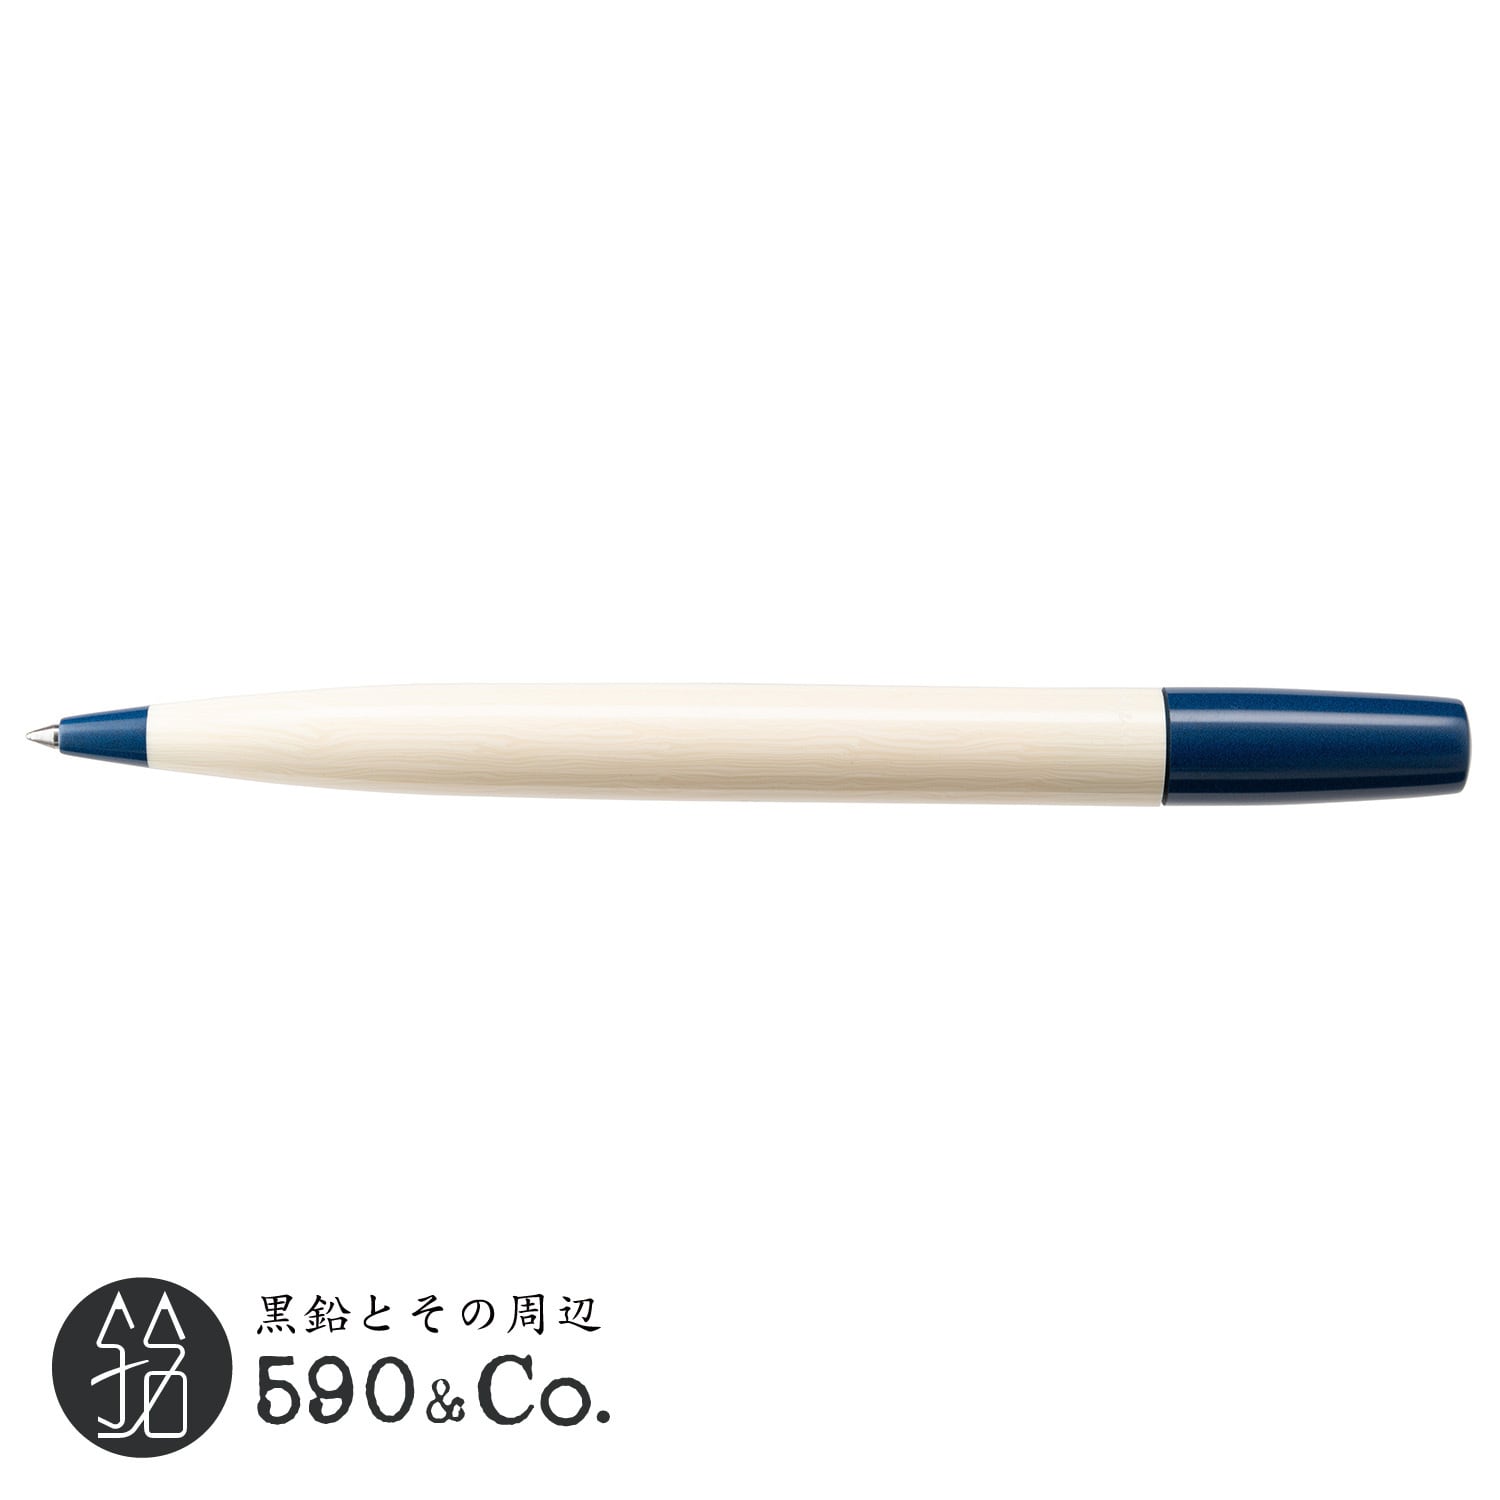 【綴り屋】アイボリーボールペン・月灯 (カラーエボナイト) 590Co.